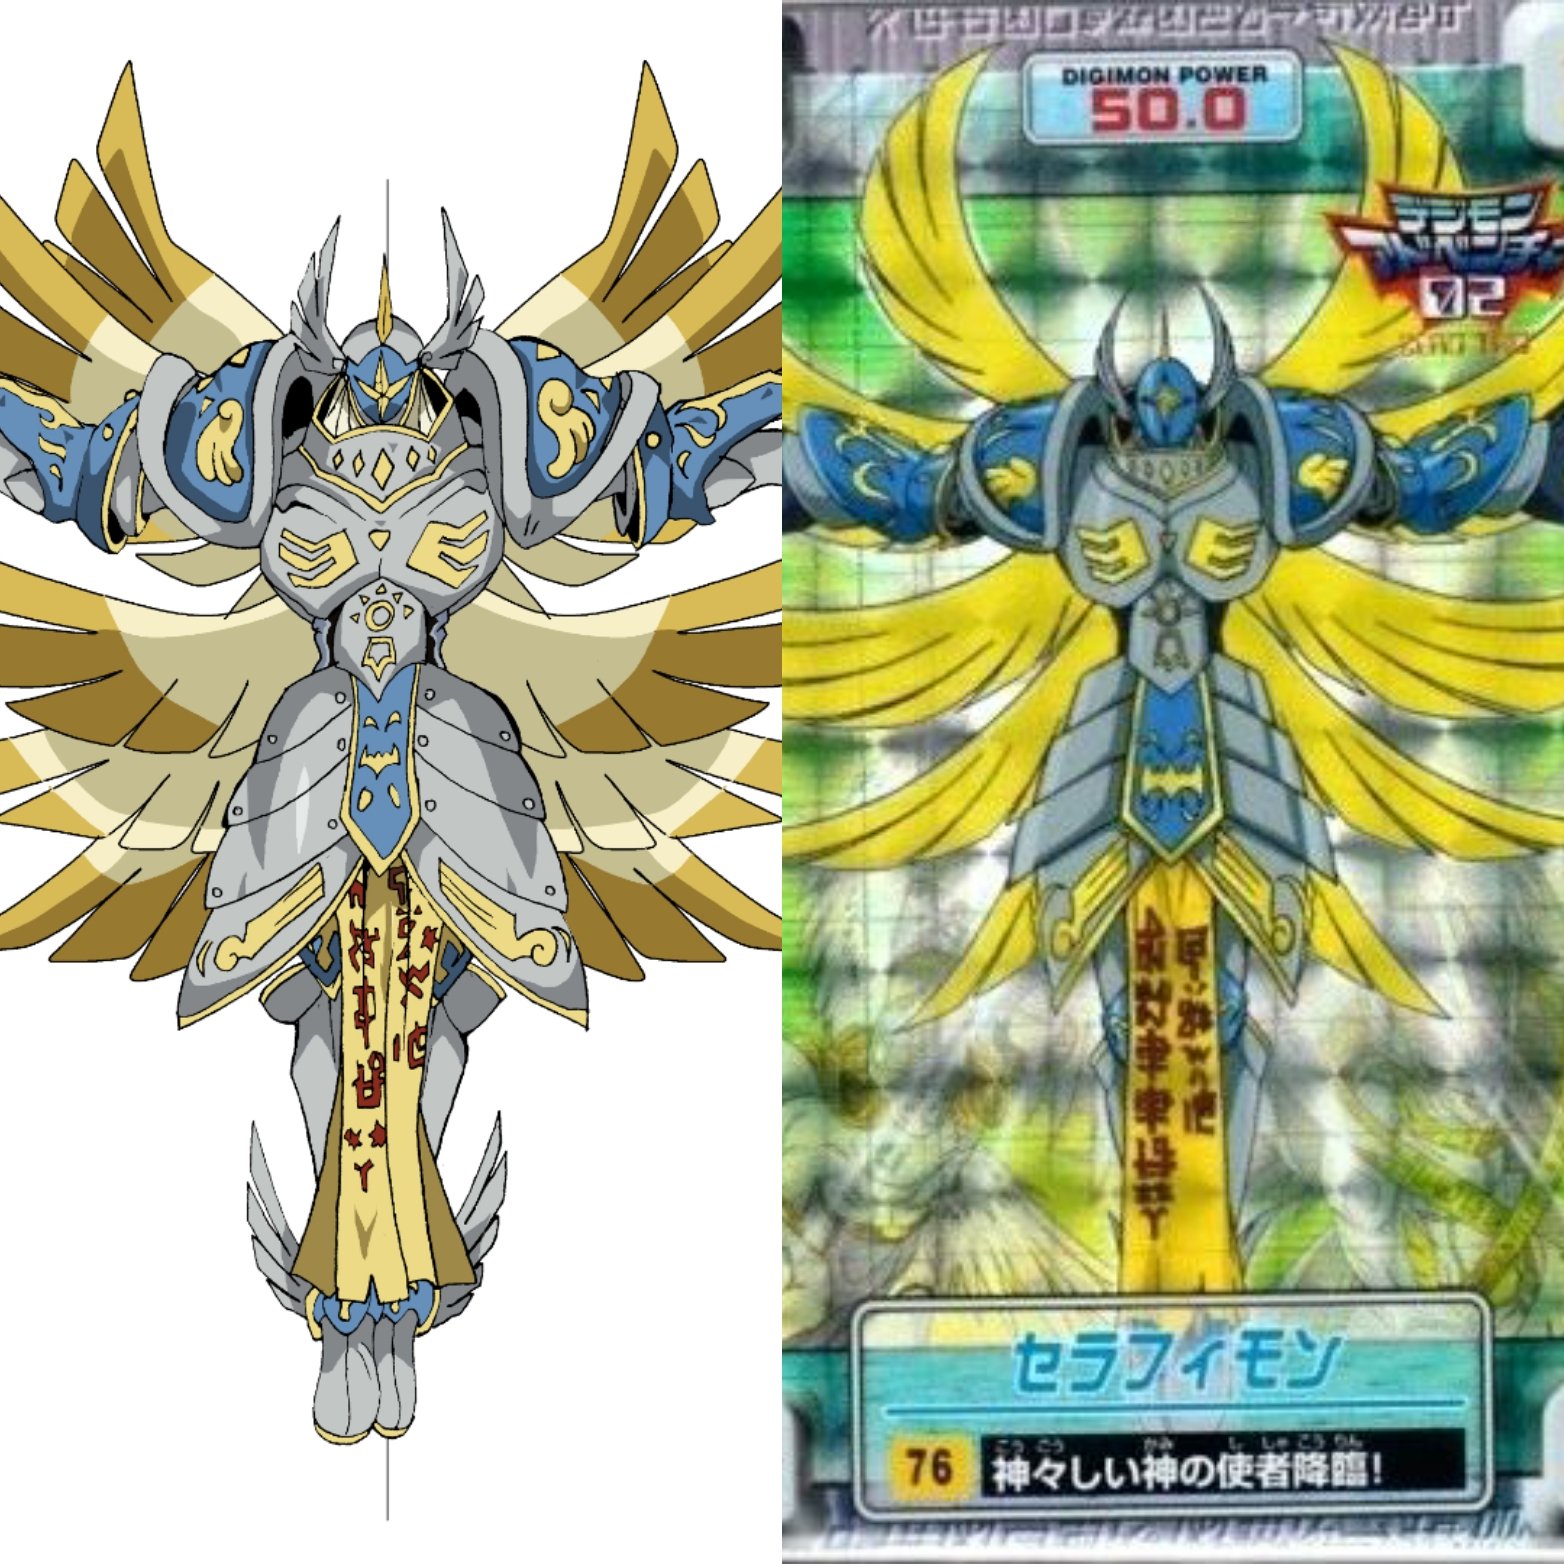 Seraphi COMMISSIONS OPEN on X:  ▪︎ Digimon Adventure Tri. 2